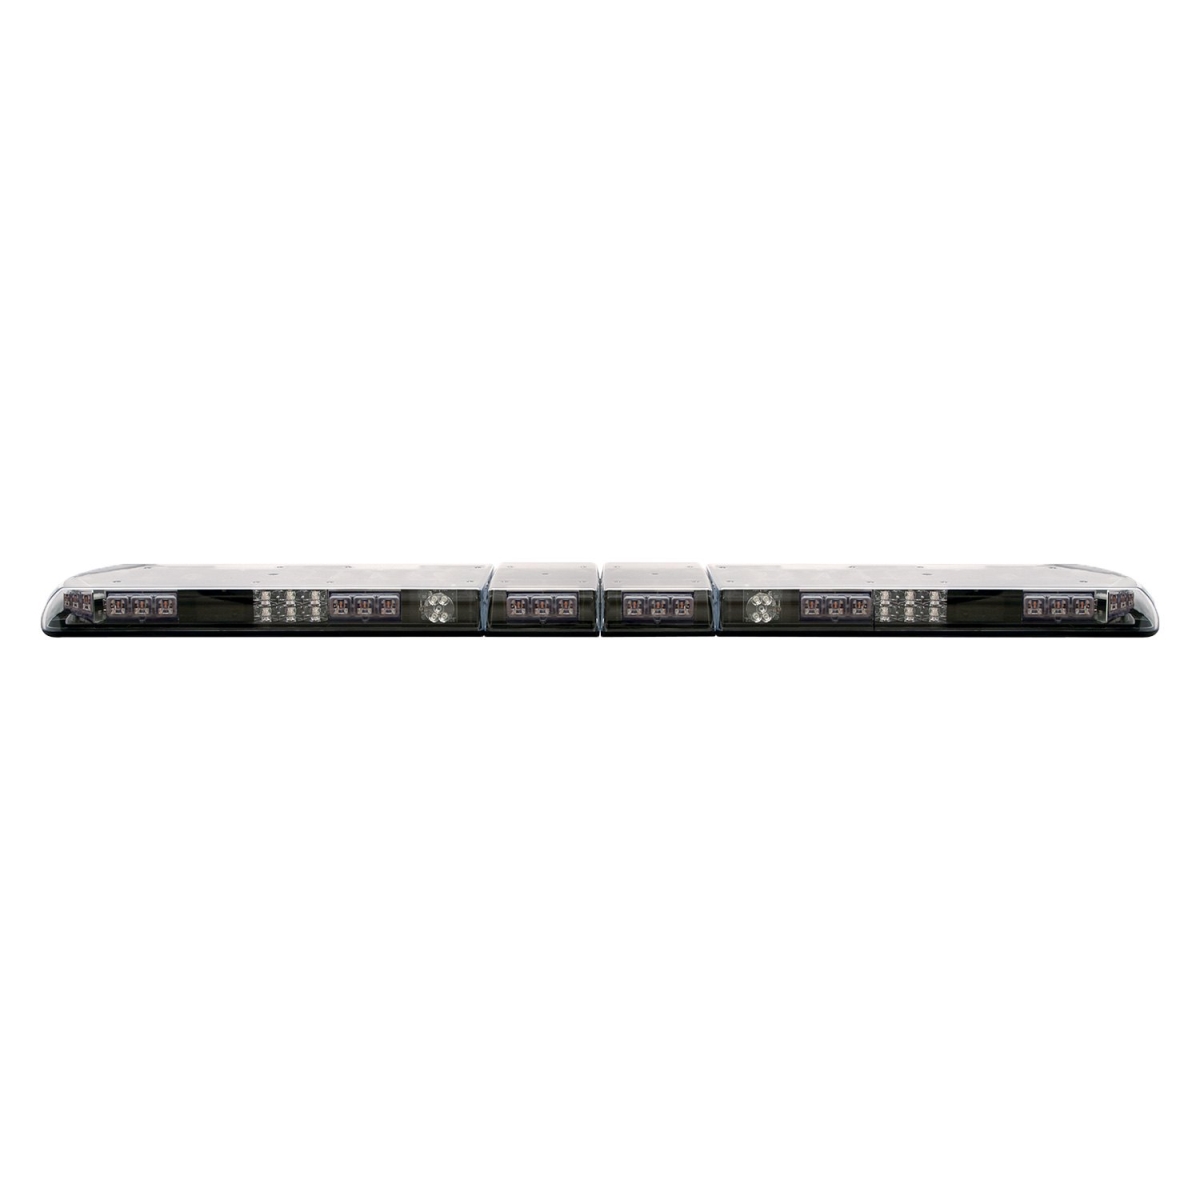 Ecc12-20006-e Lightbar Vantage 60 In. 16 Led Modules Stt 2 Rear Worklamps Alley Lights 12-24vdc - Amber